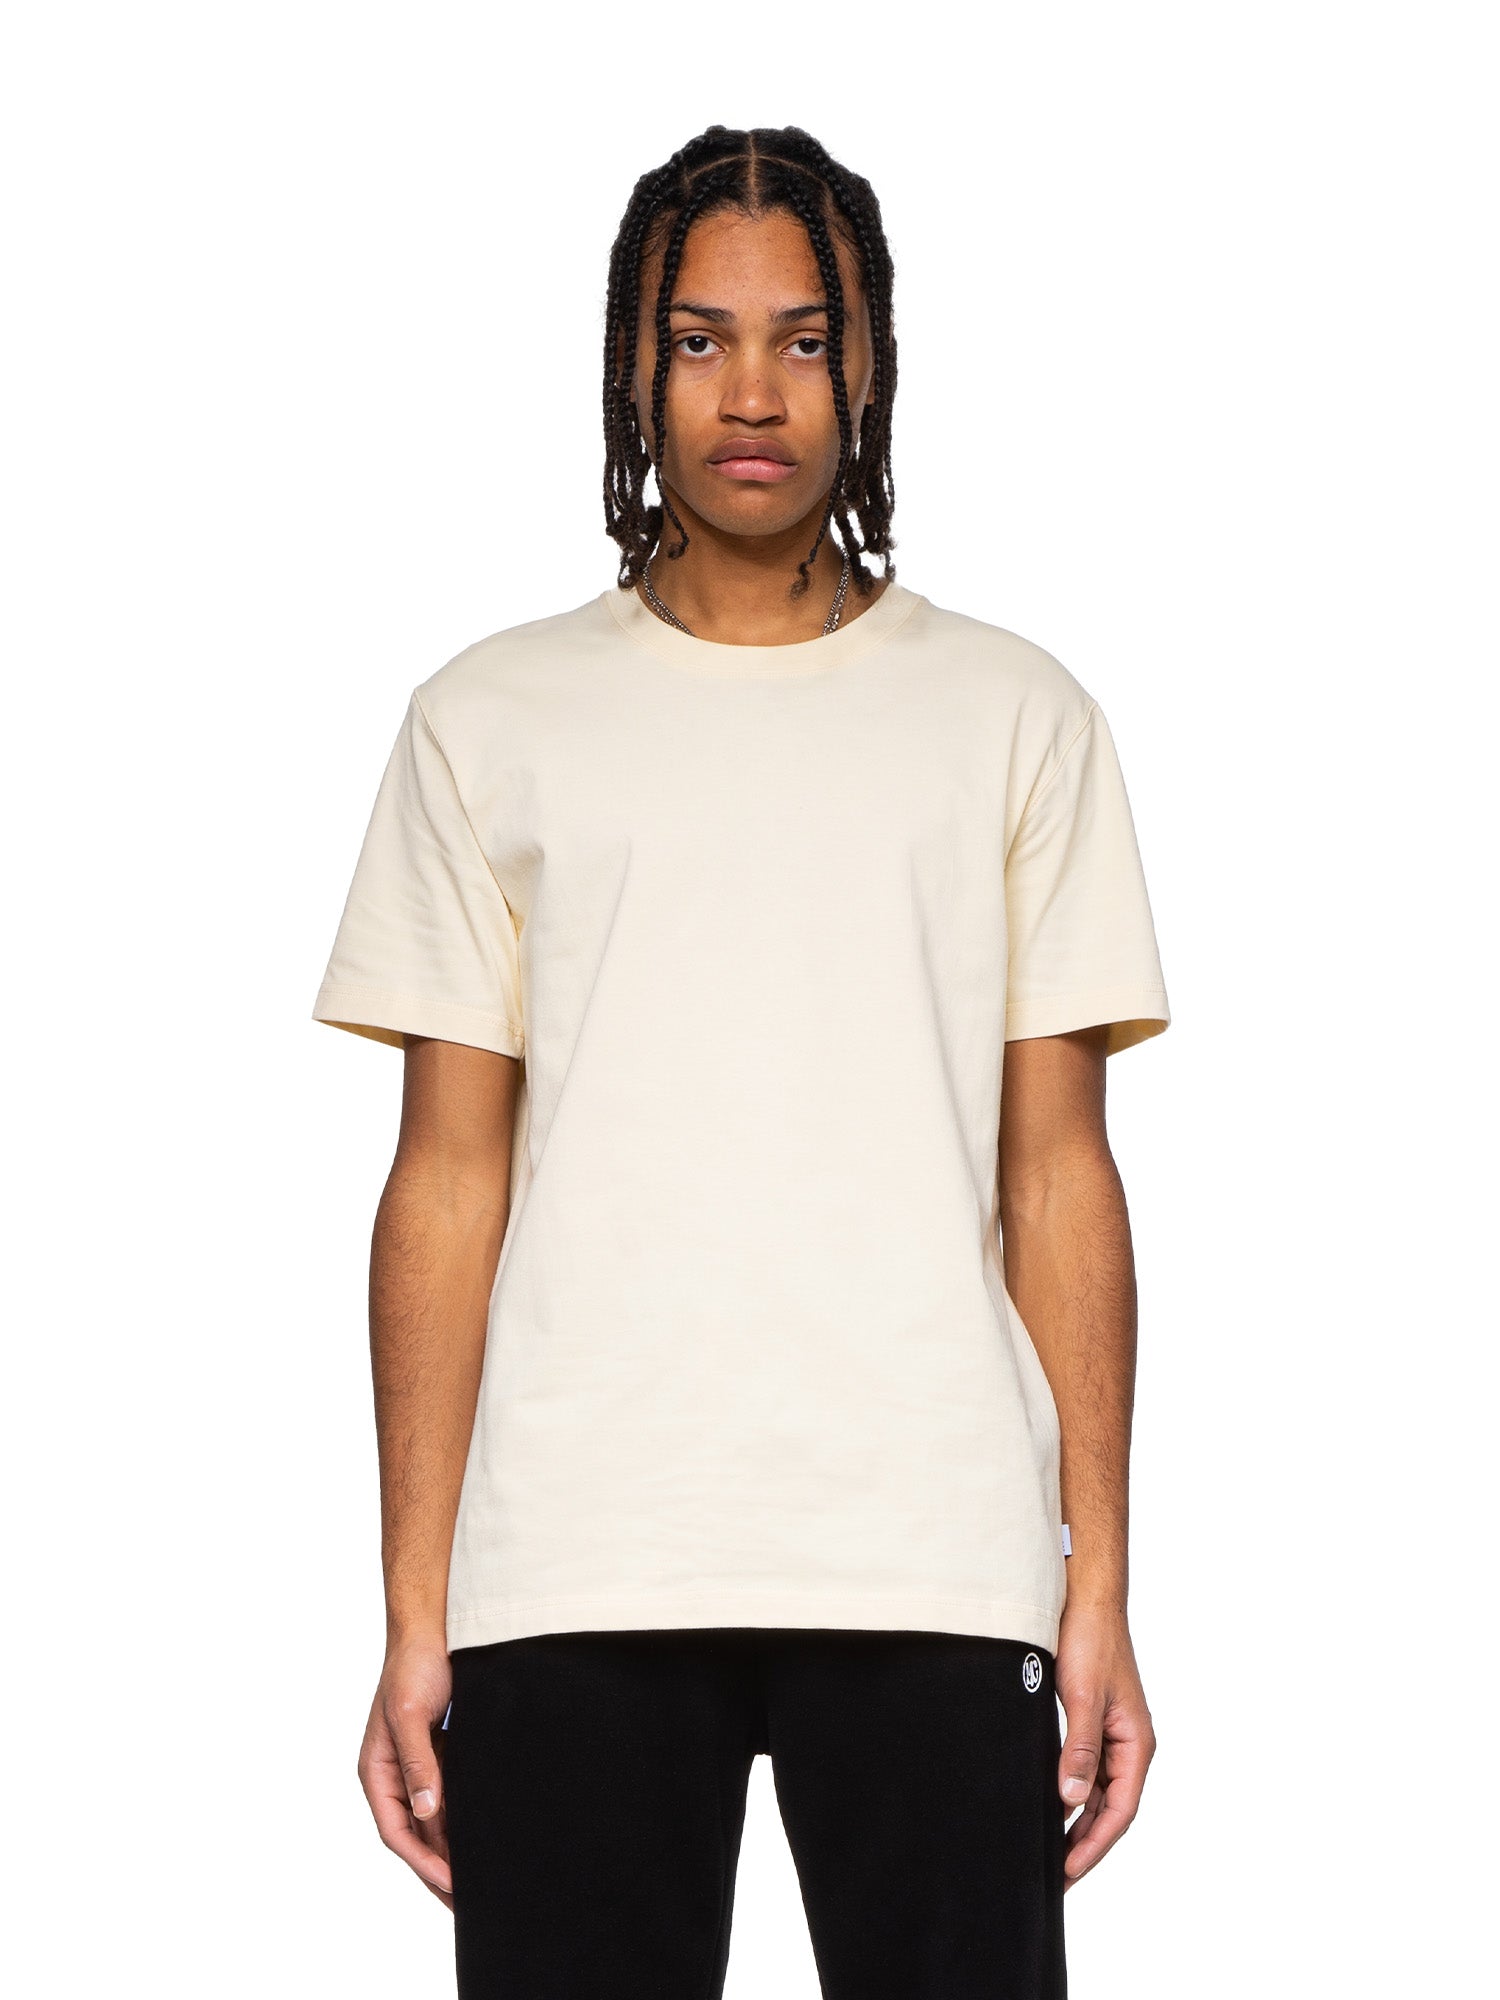 Asher - Graphic T-Shirt - Cream